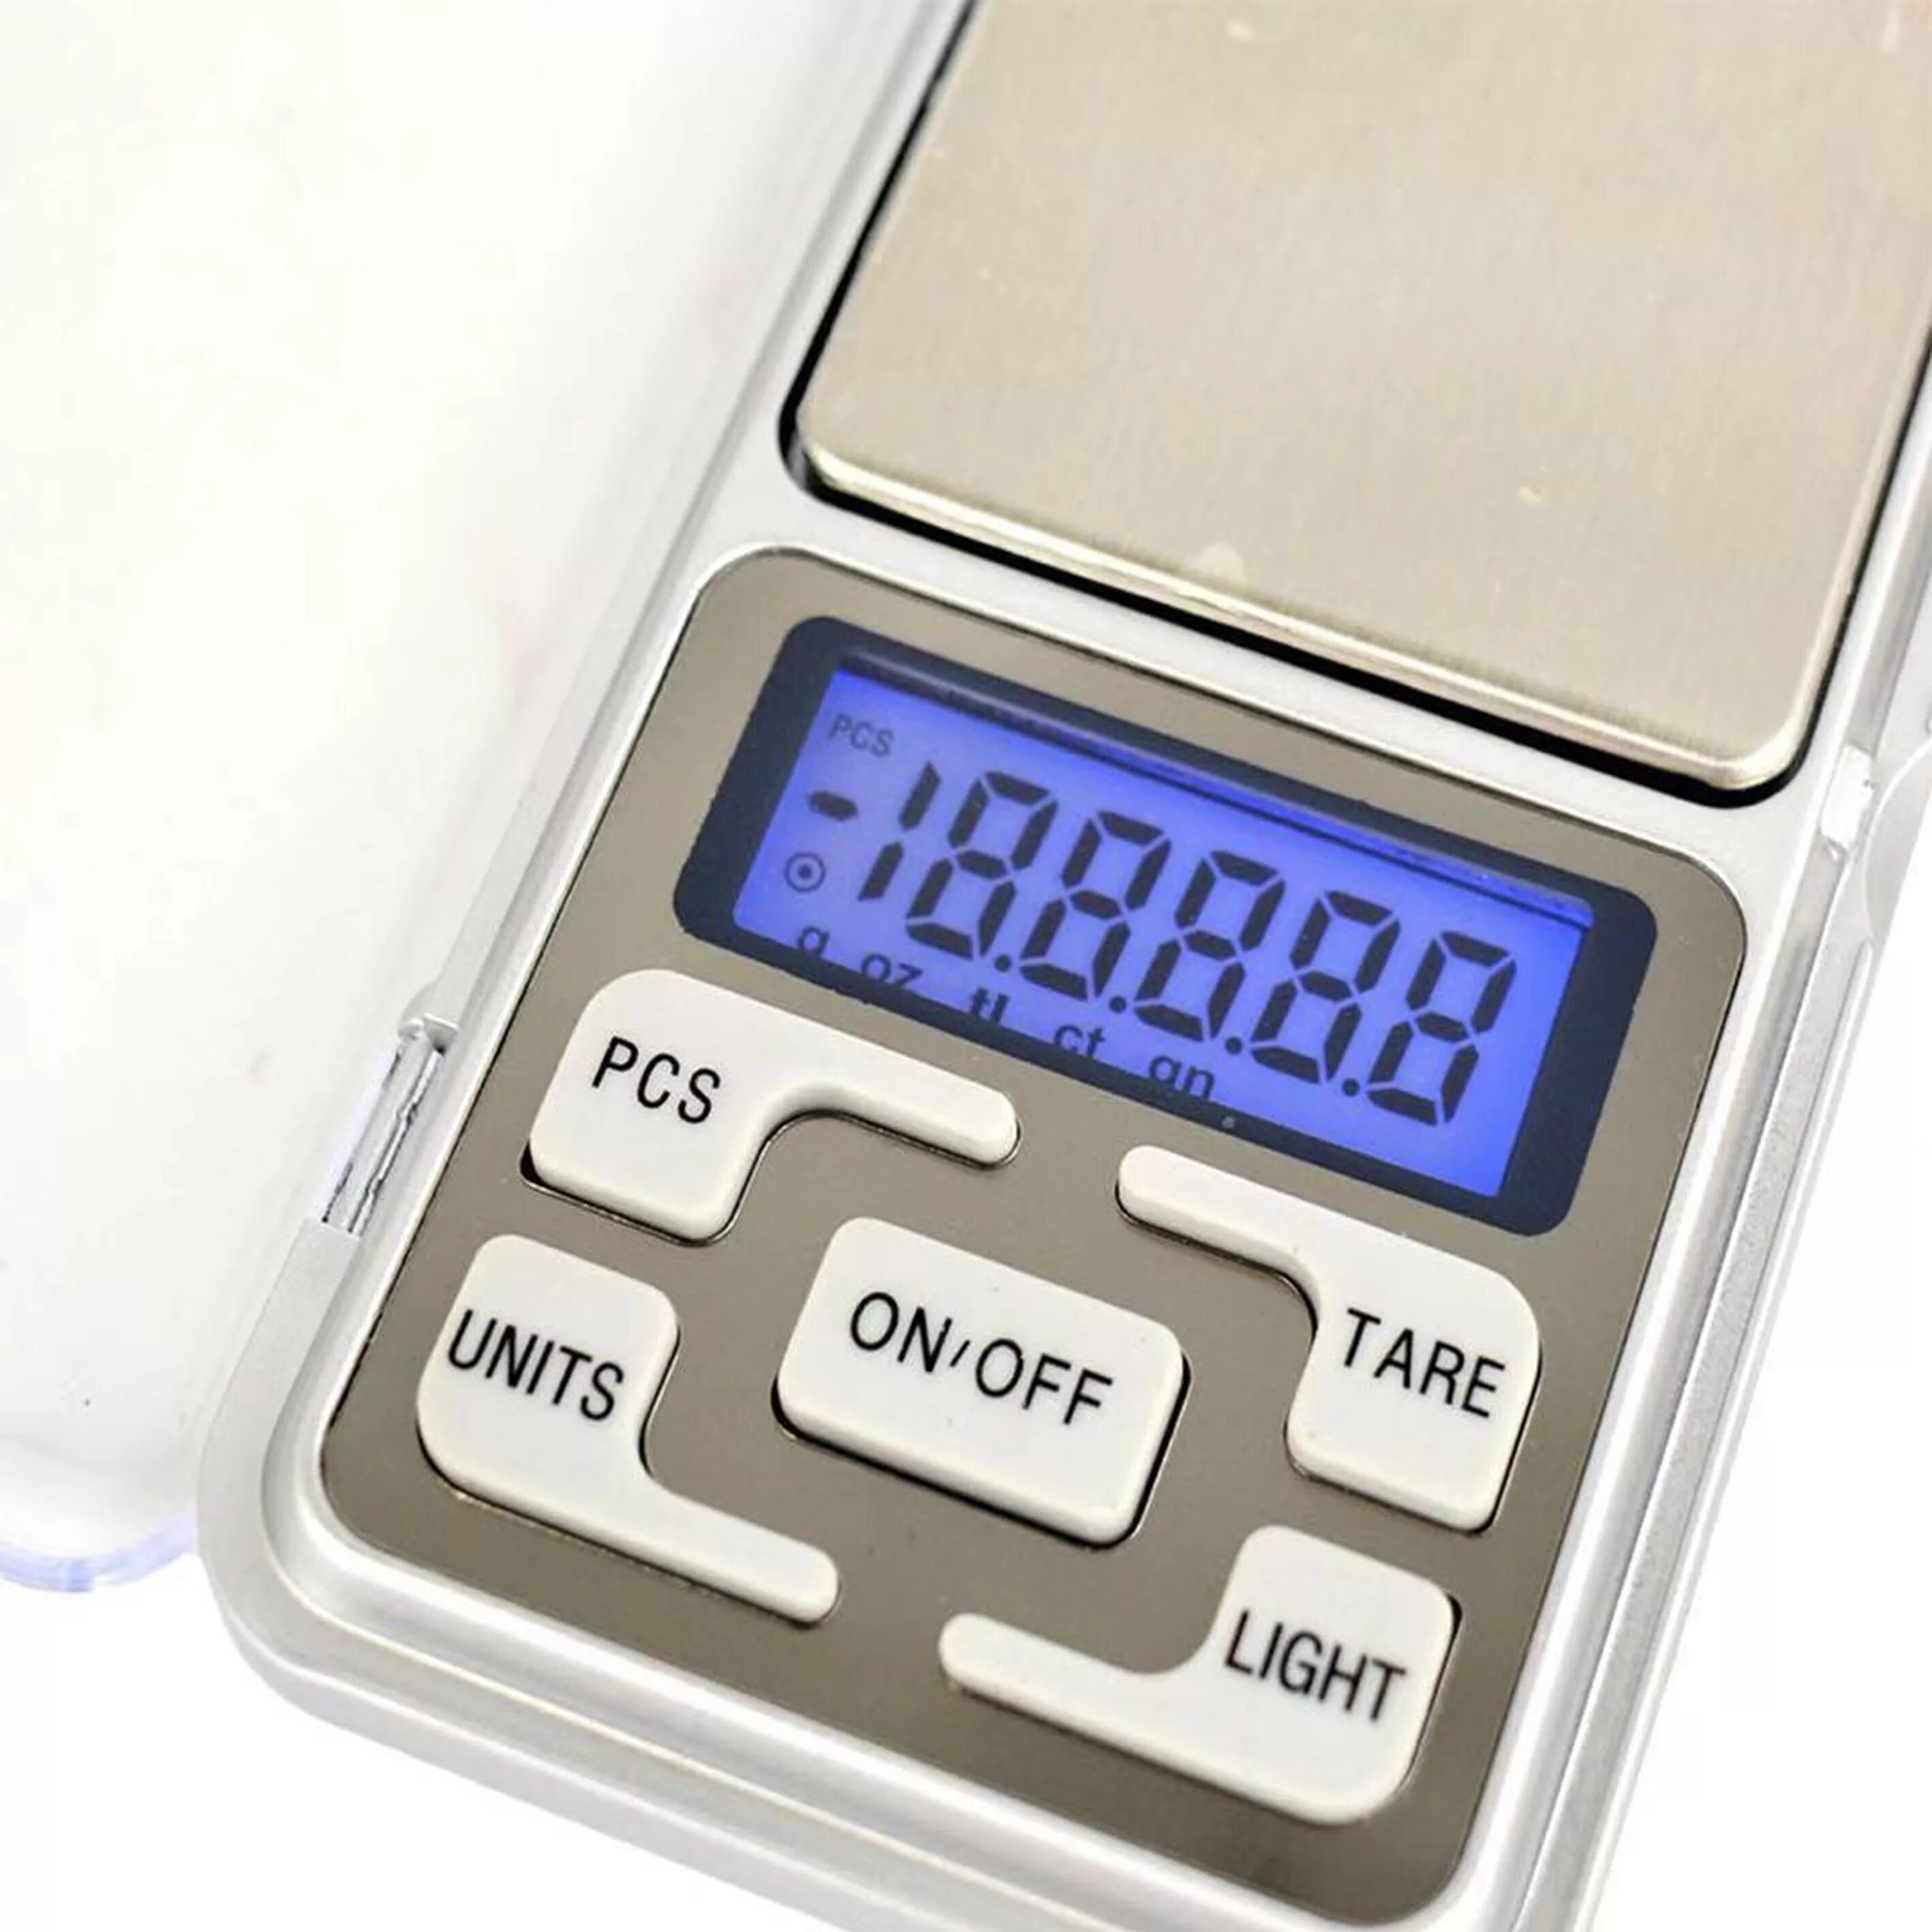 Весы портативные Эл. MH-500 Pocket Scale 500гр точность 0,1гр. Pocket Scale MH-500 весы ювелирные электронные карманные 500 г/0,1 г. Весы электронные, 500g х 0,1 г. Электронные весы Mini 200g.